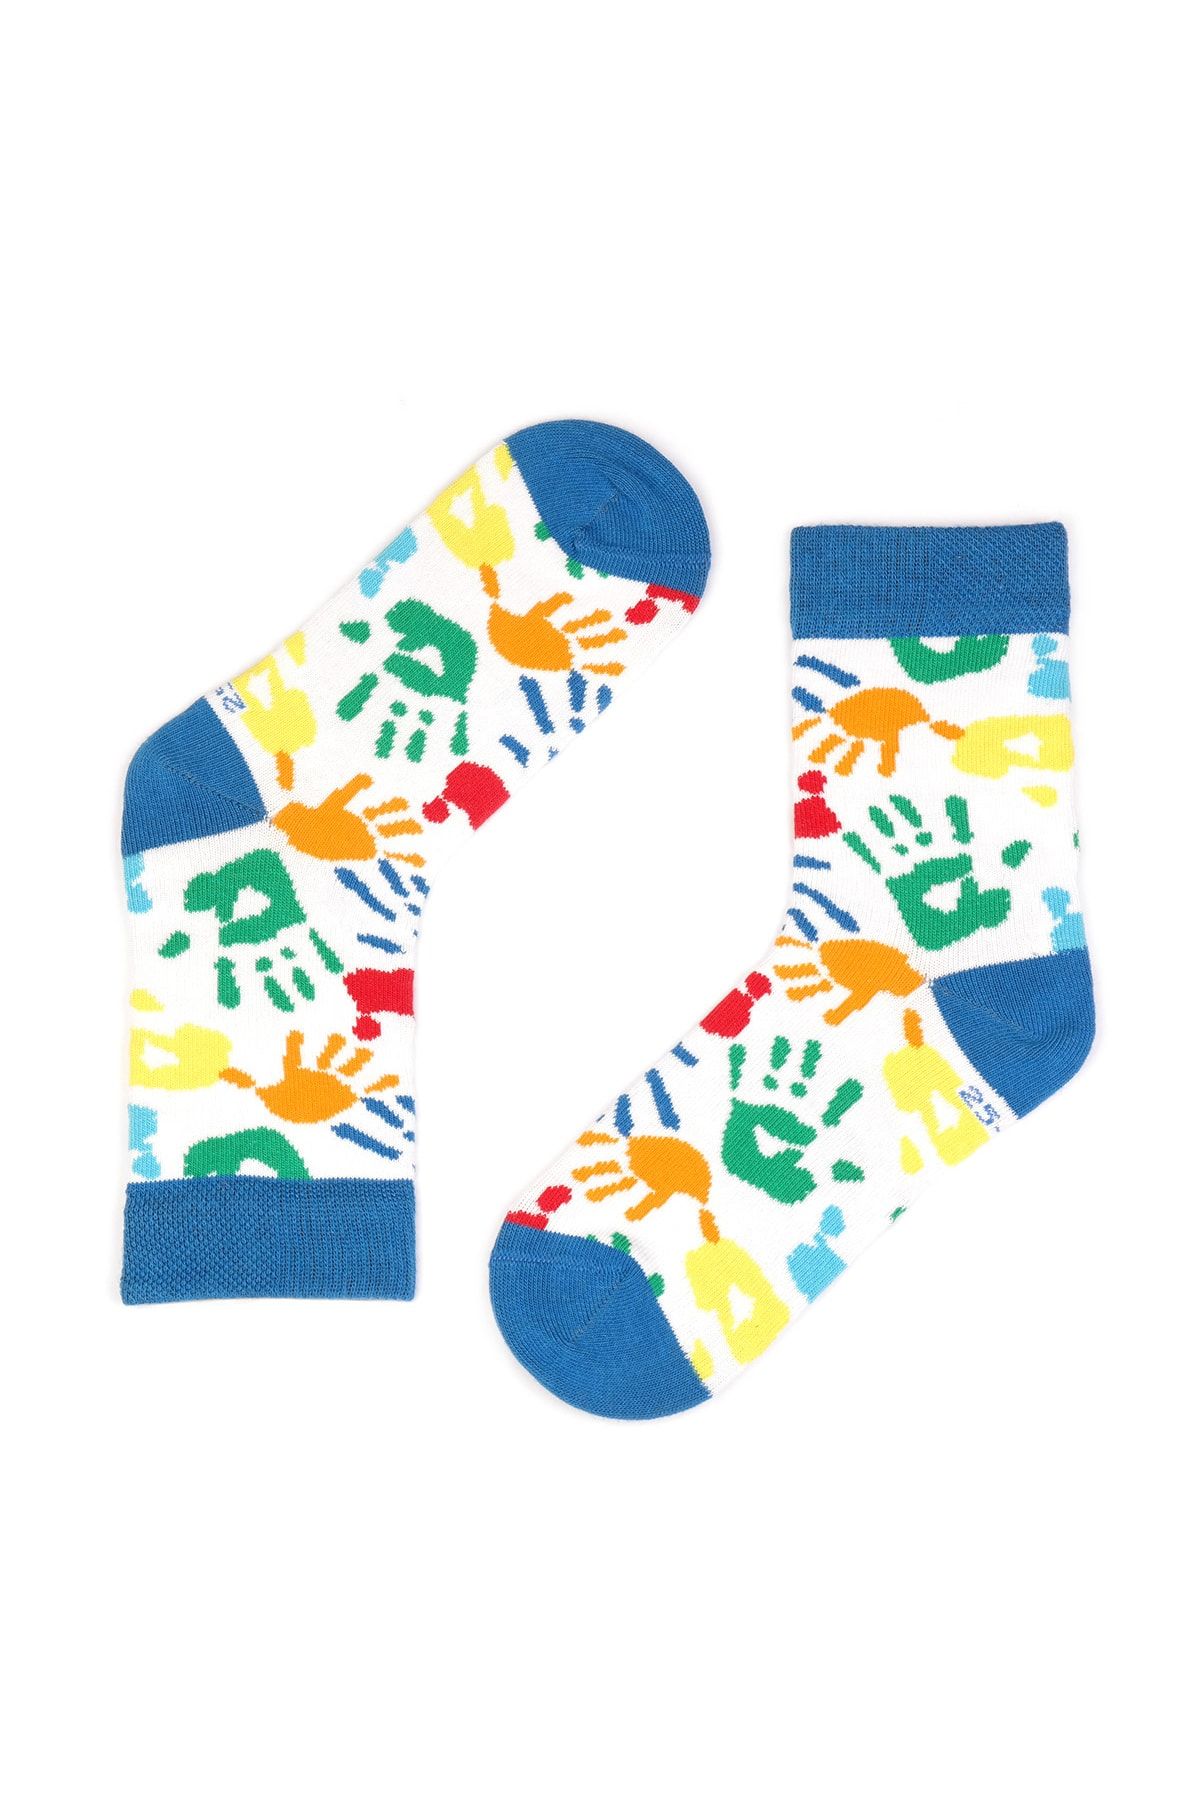 hogso Mavi El Baskısı Desenli Çocuk Çorap